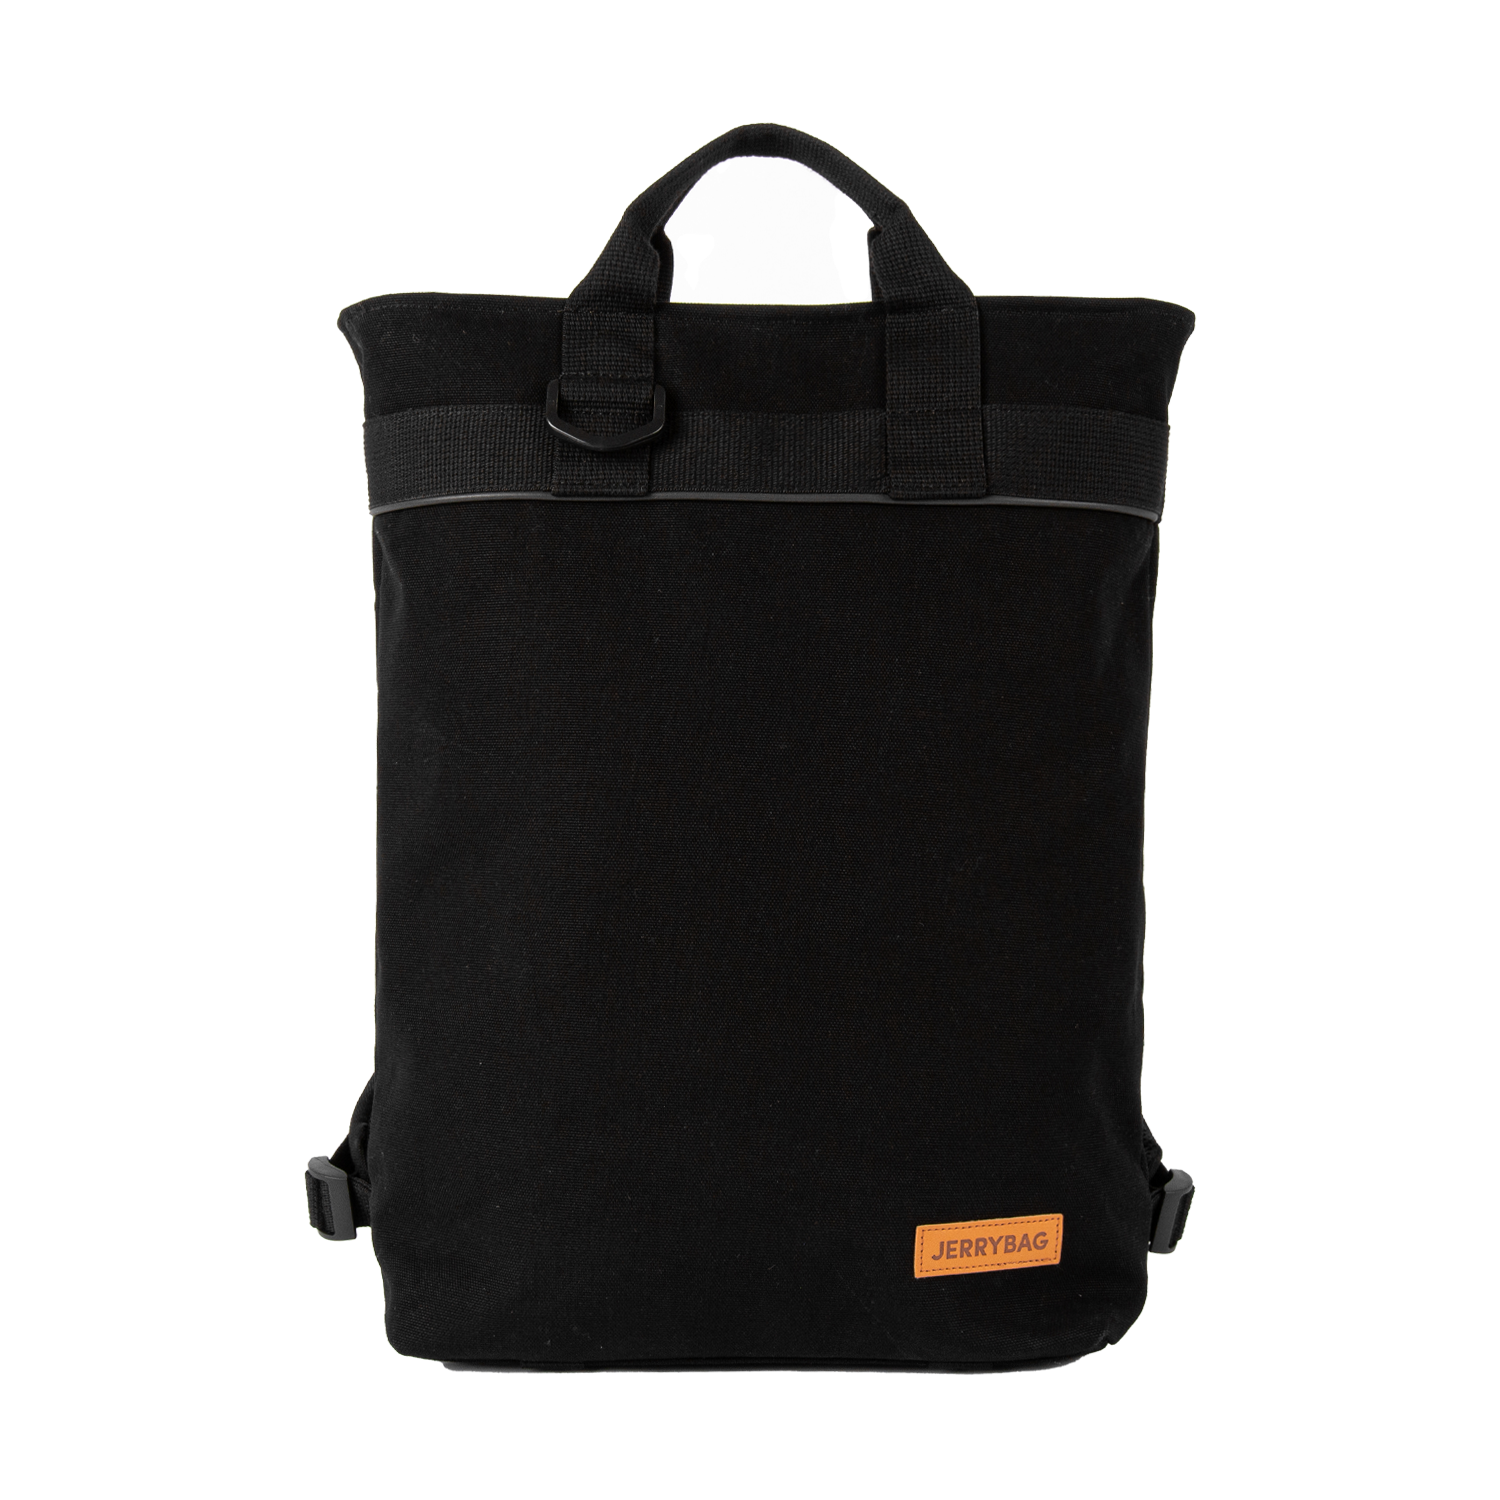 Standard Canvas Backpack Black